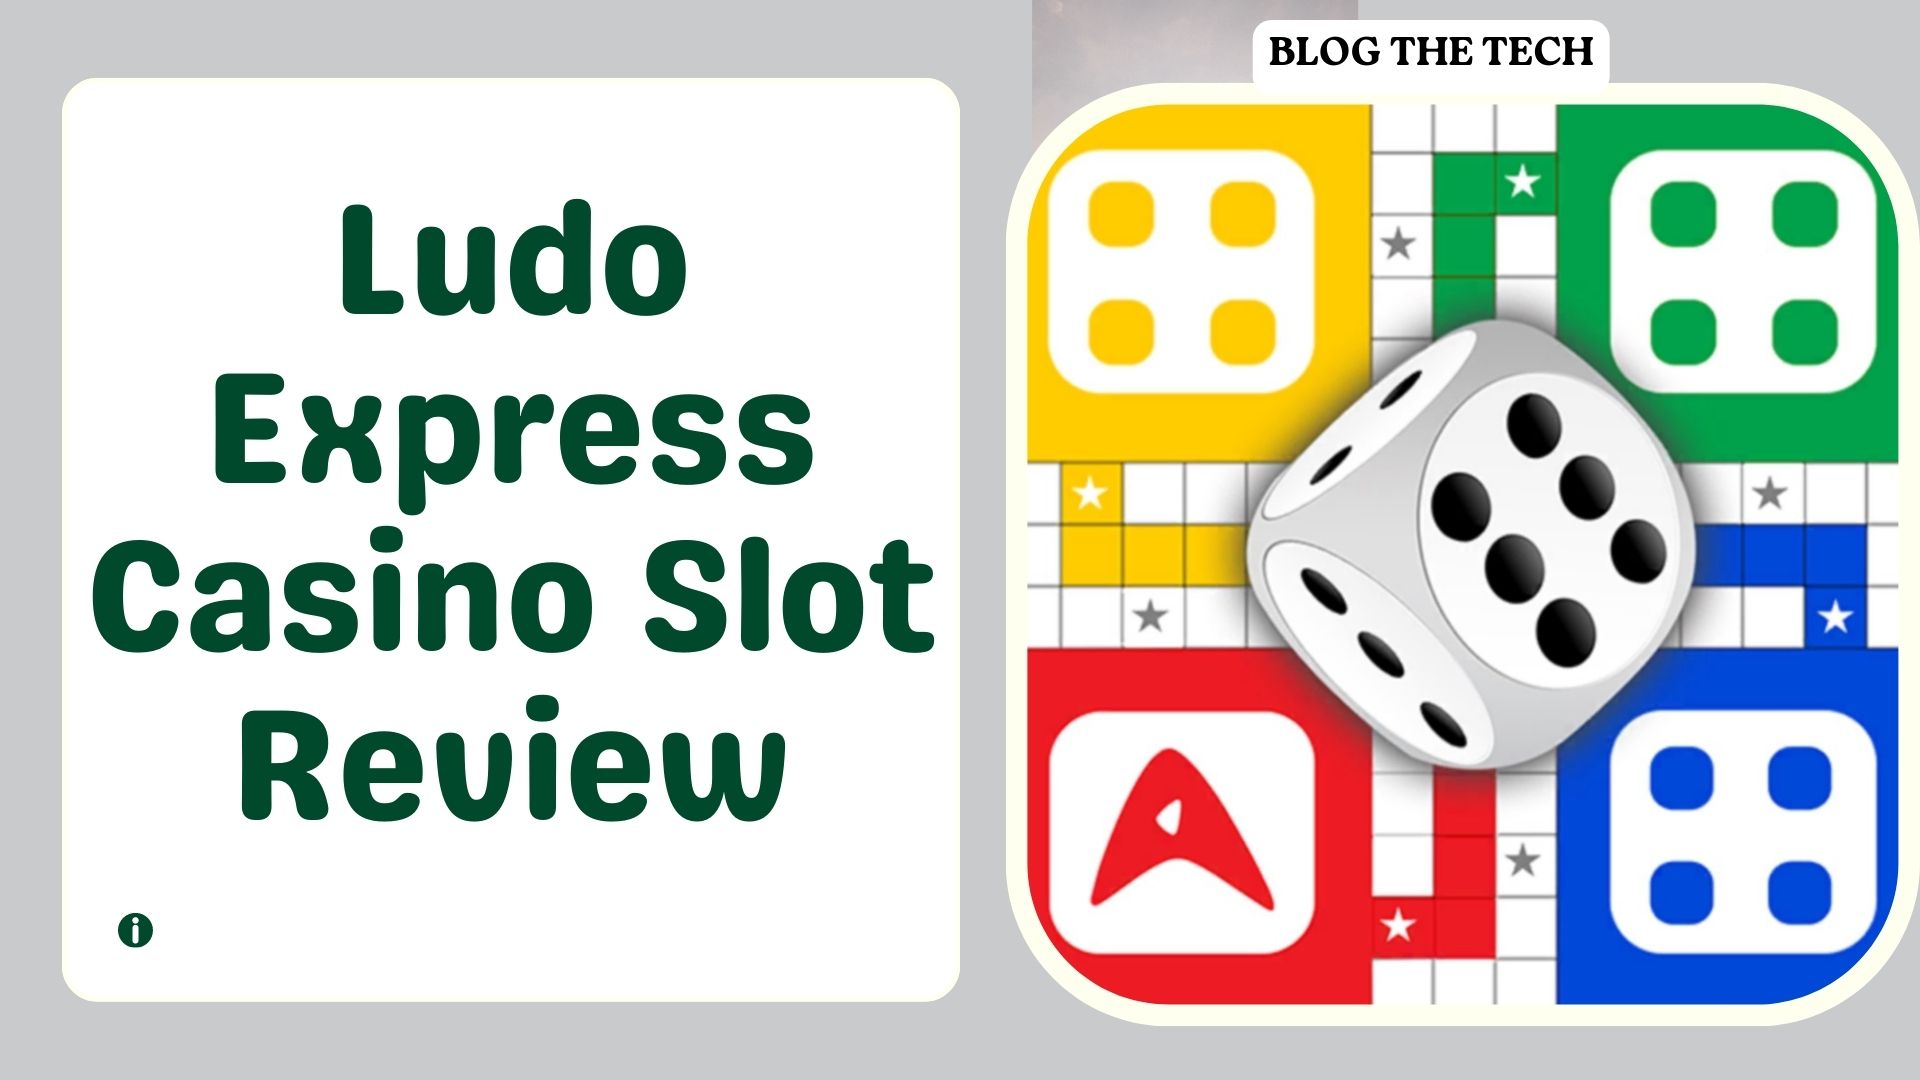 Ludo Express Casino Slot Review